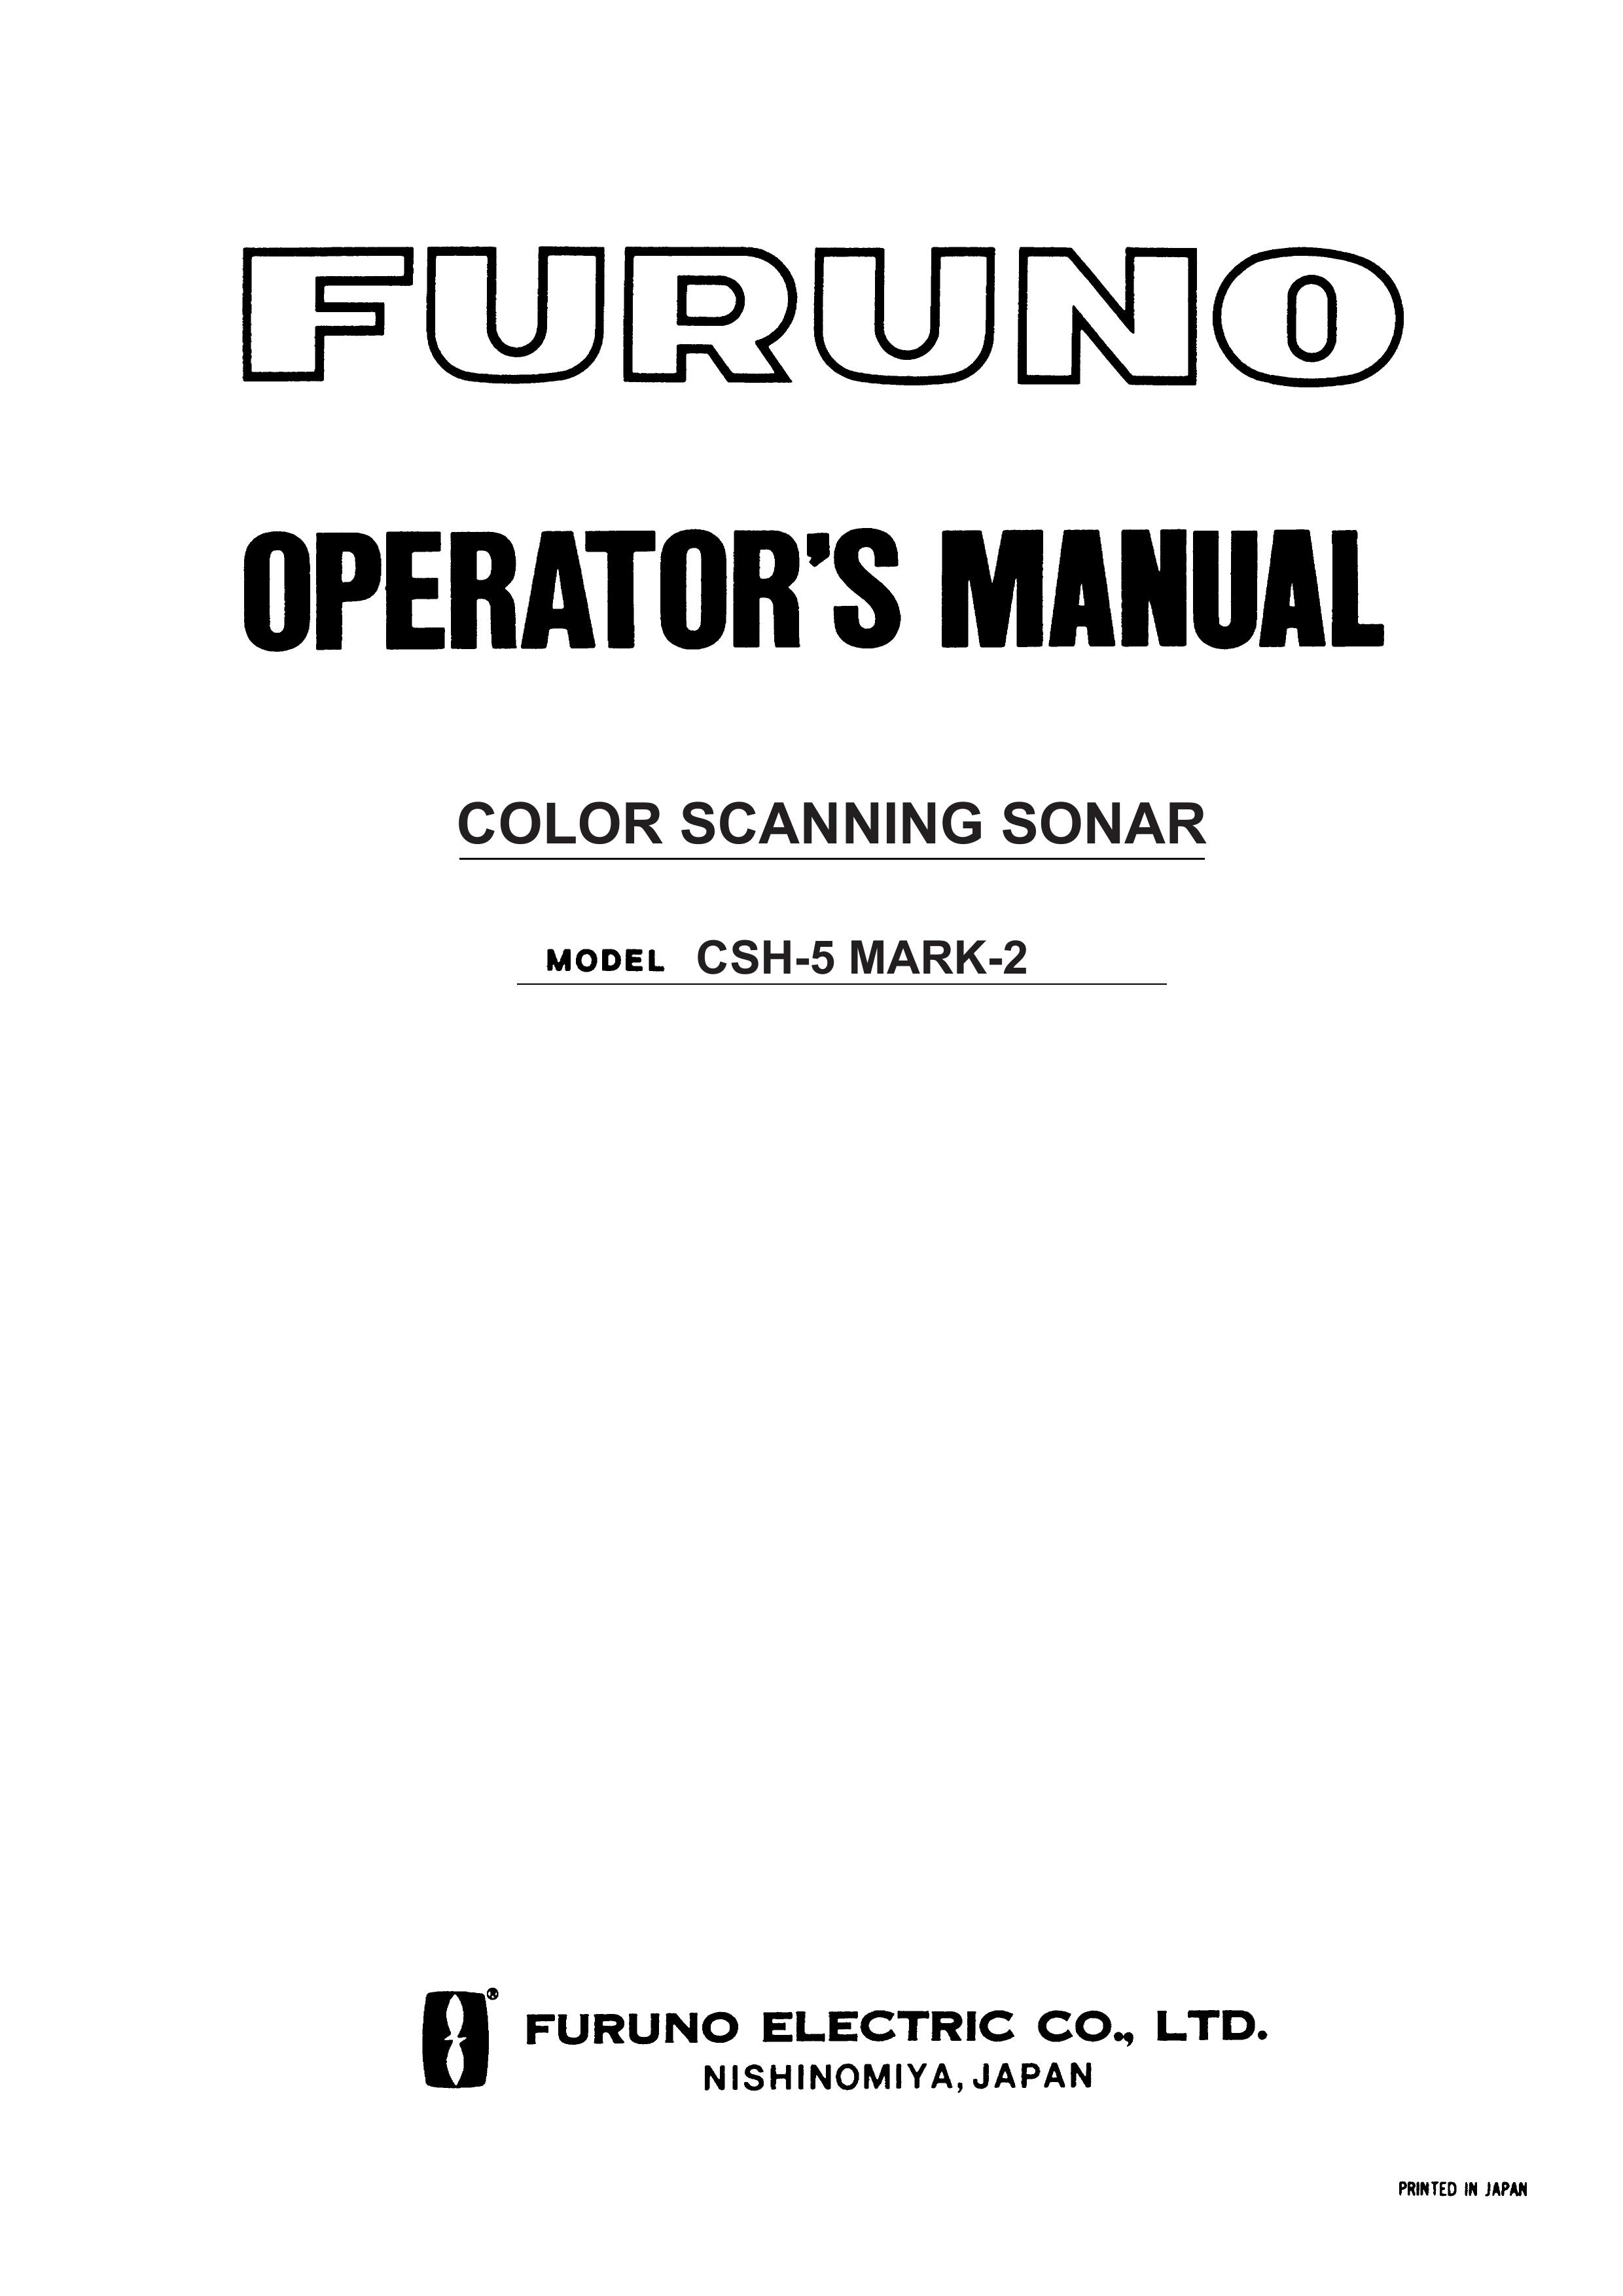 Furuno CSH-5 MARK-2 SONAR User Manual